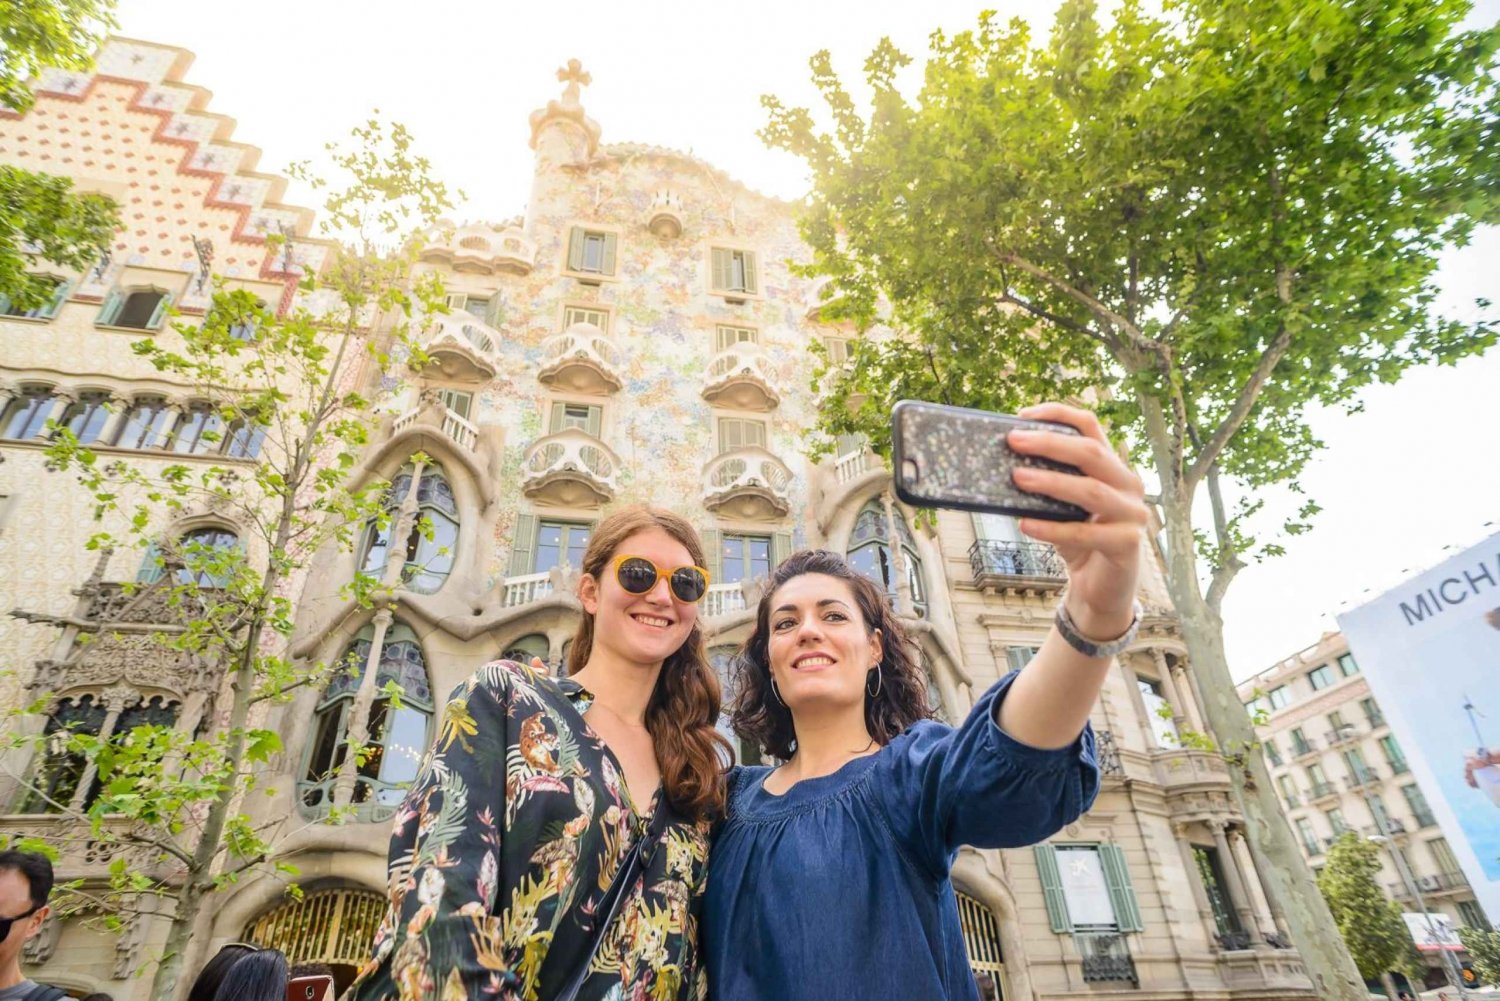 Gratis tur til Barcelona: Gaudi-højdepunkter og La Sagrada Famila